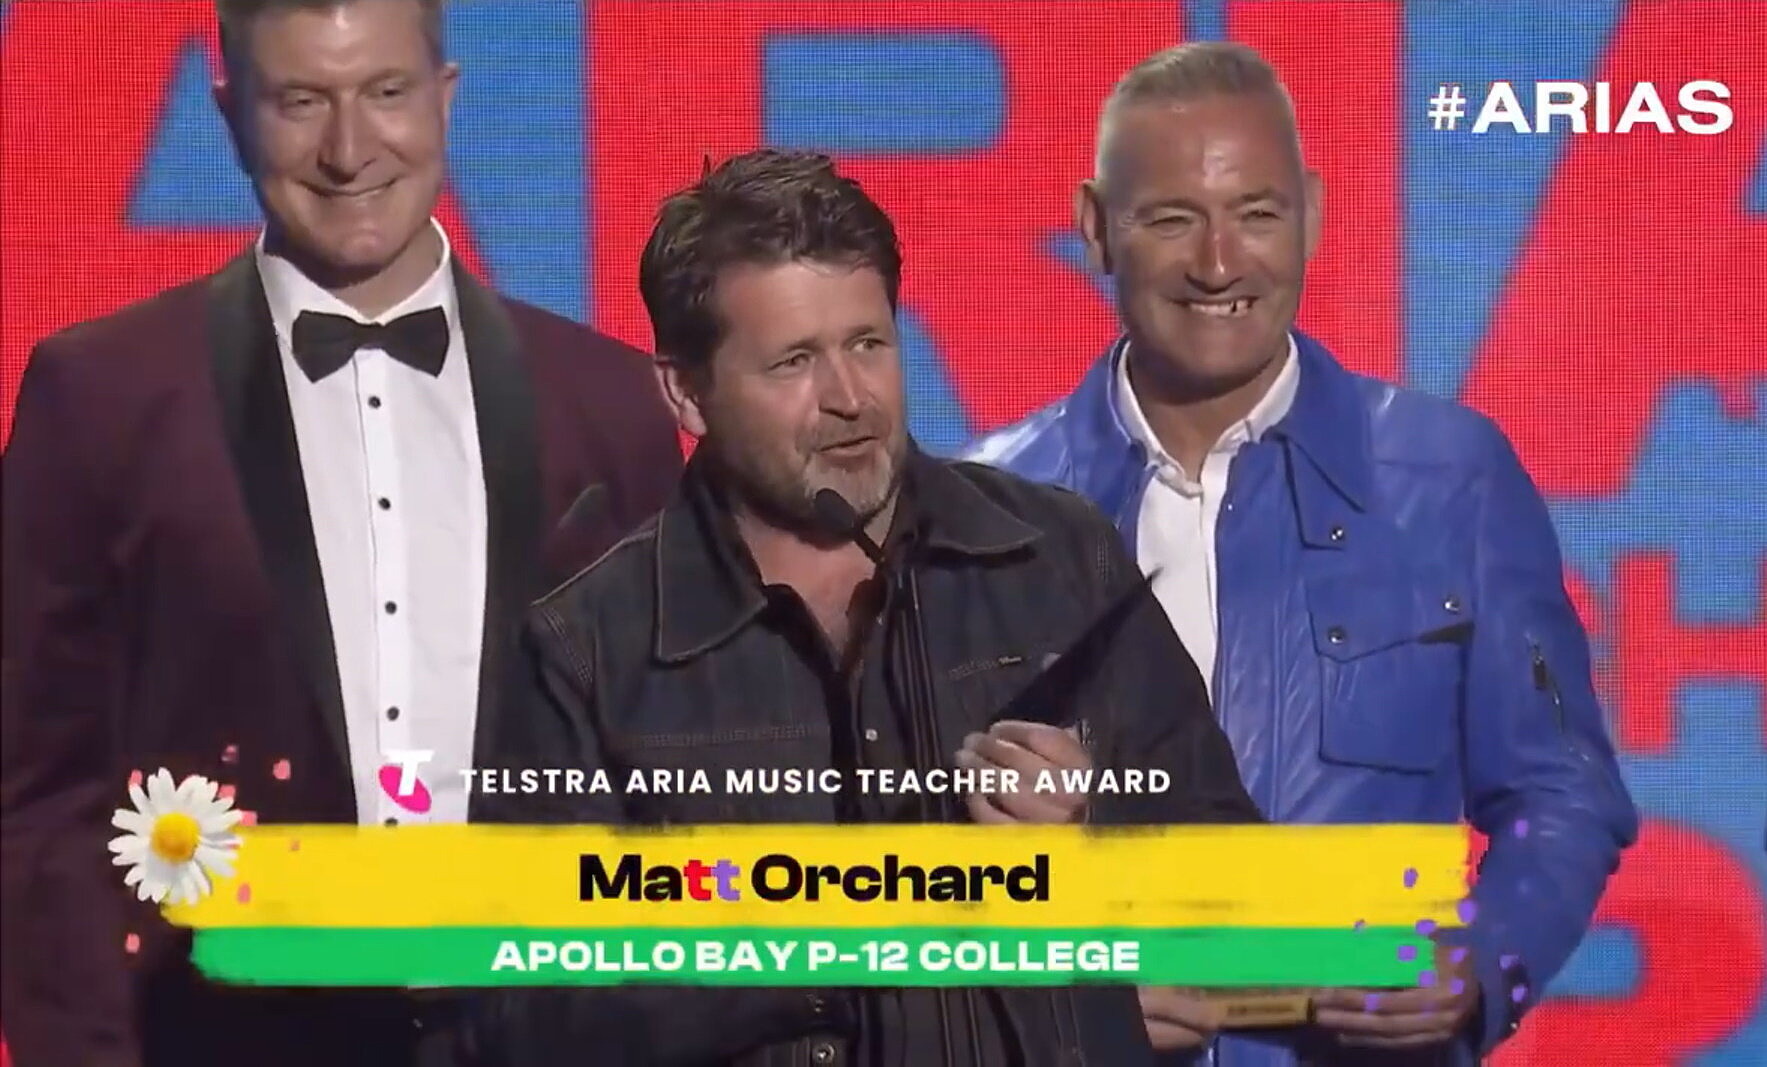 Matt Orchard accepting Telstra ARIA Music Teacher award